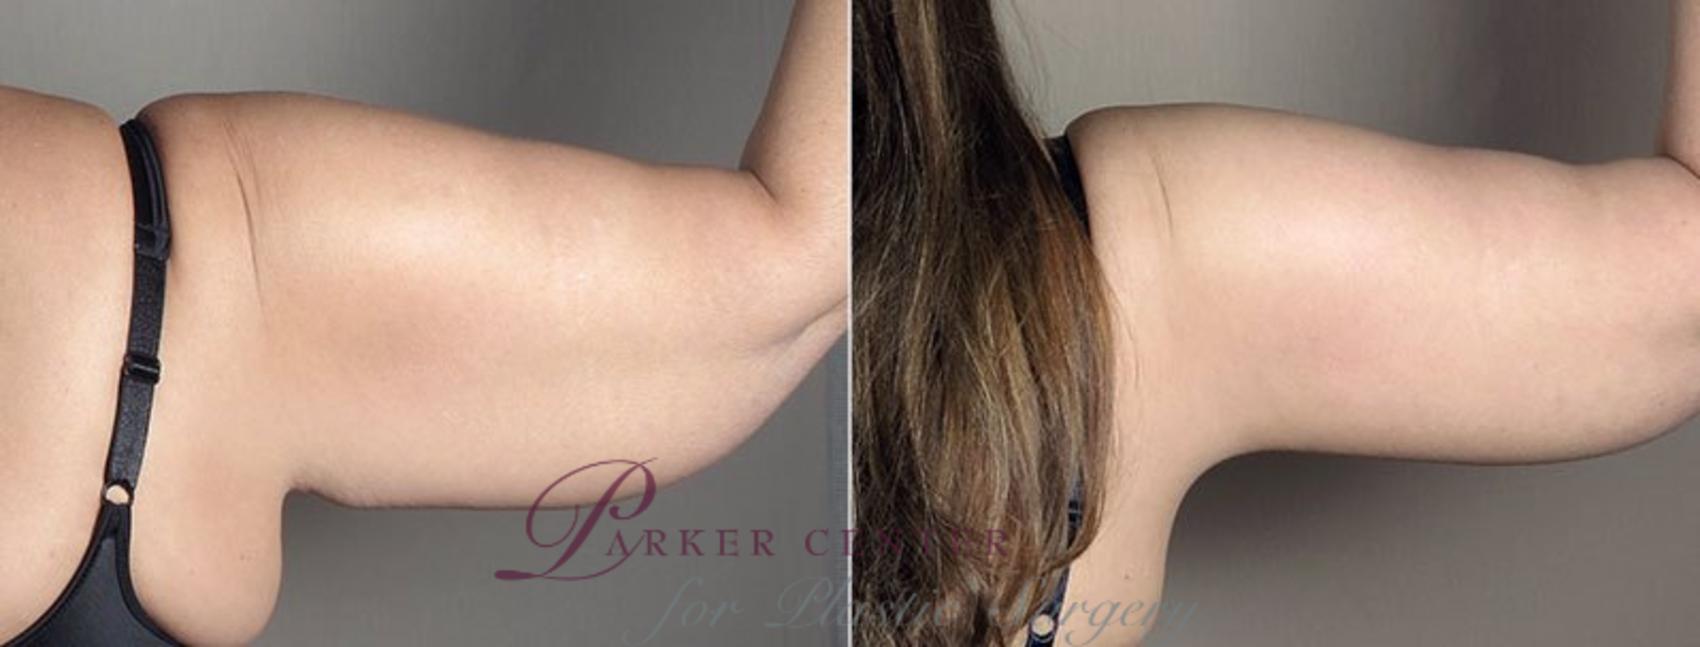 Upper Arm Rejuvenation Case 832 Before & After View #4 | Paramus, NJ | Parker Center for Plastic Surgery